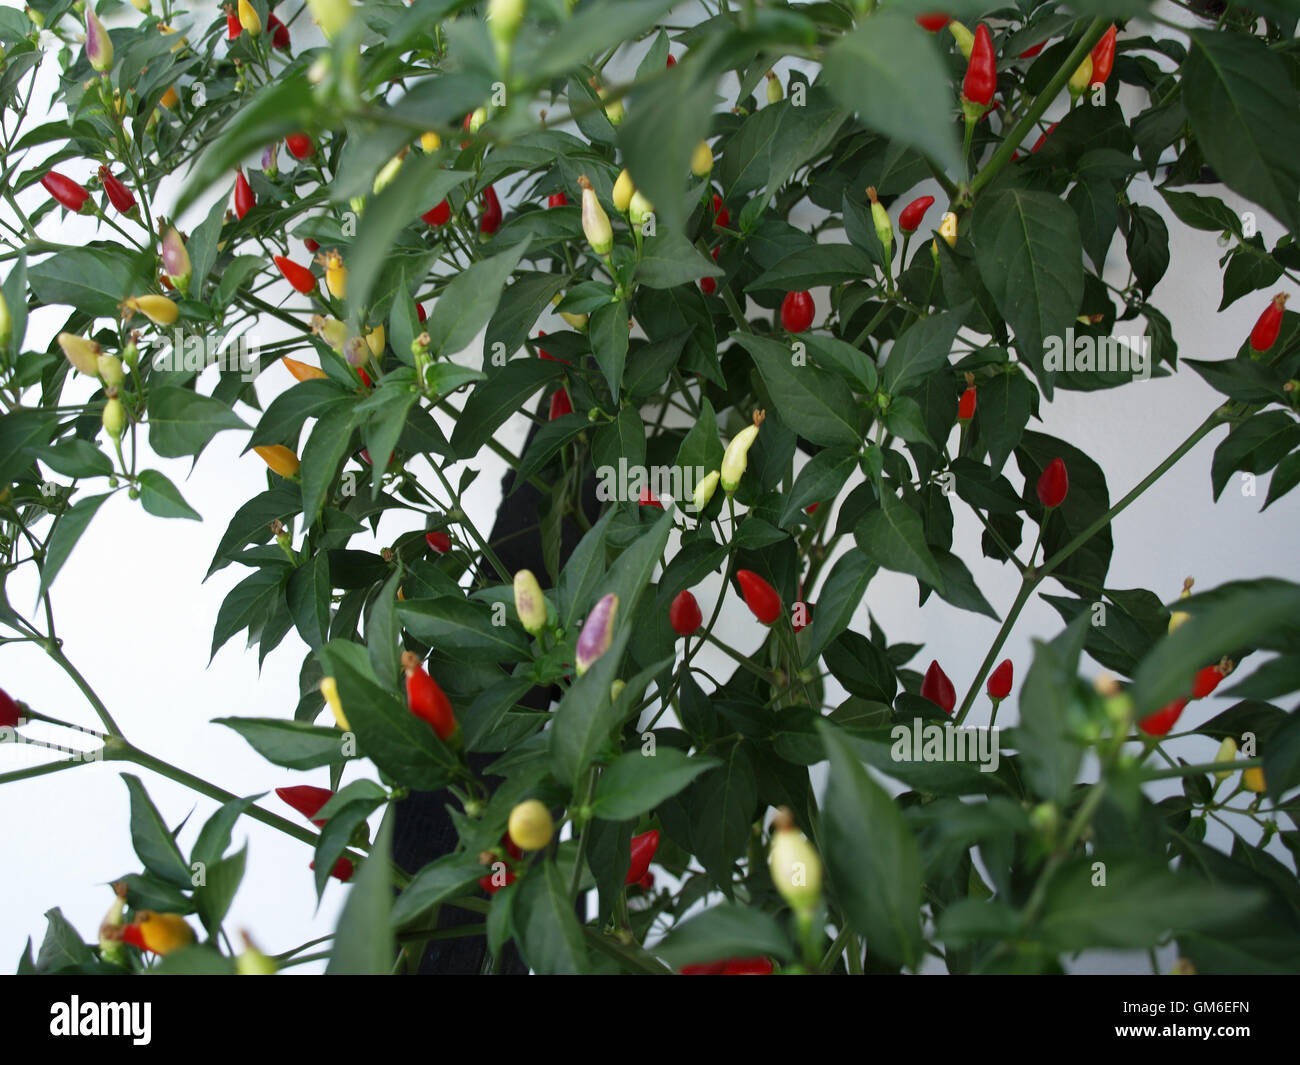 Impianto di Chili con peperoncini rossi di vari gradi di maturazione Foto Stock